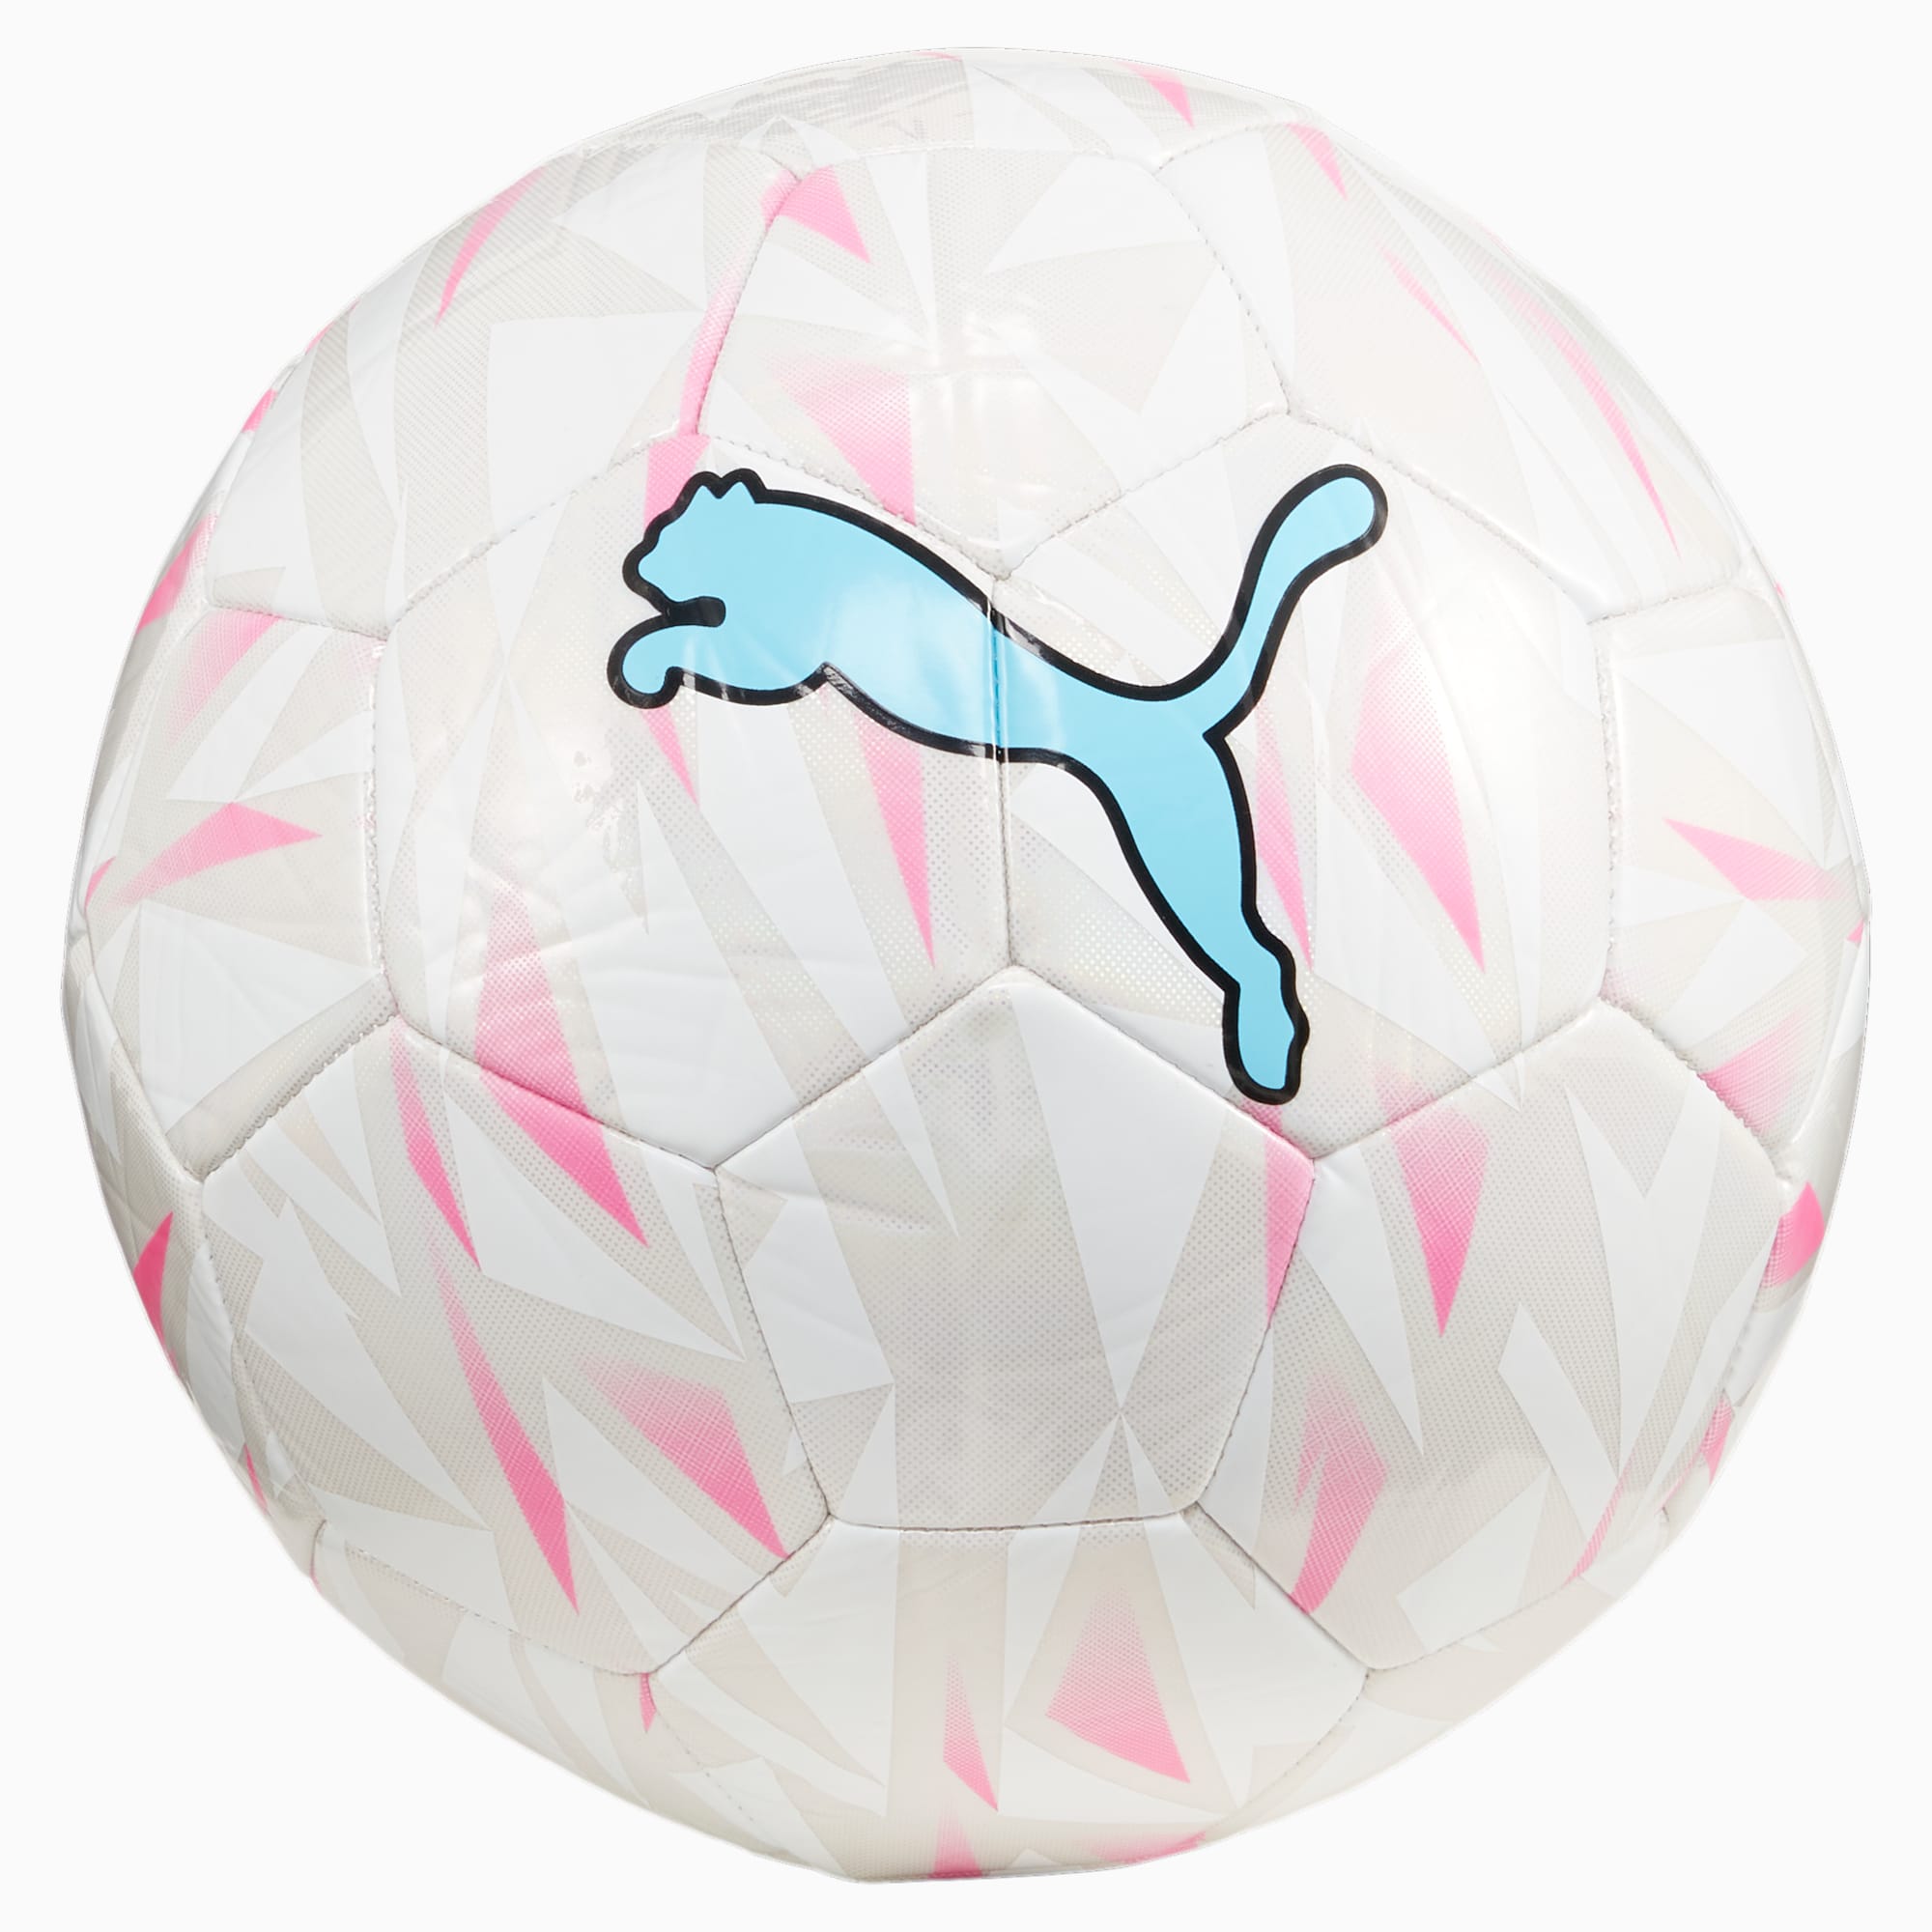 PUMA FINAL Graphic Fußball, Silber/Rosa/Weiß, Größe: 4